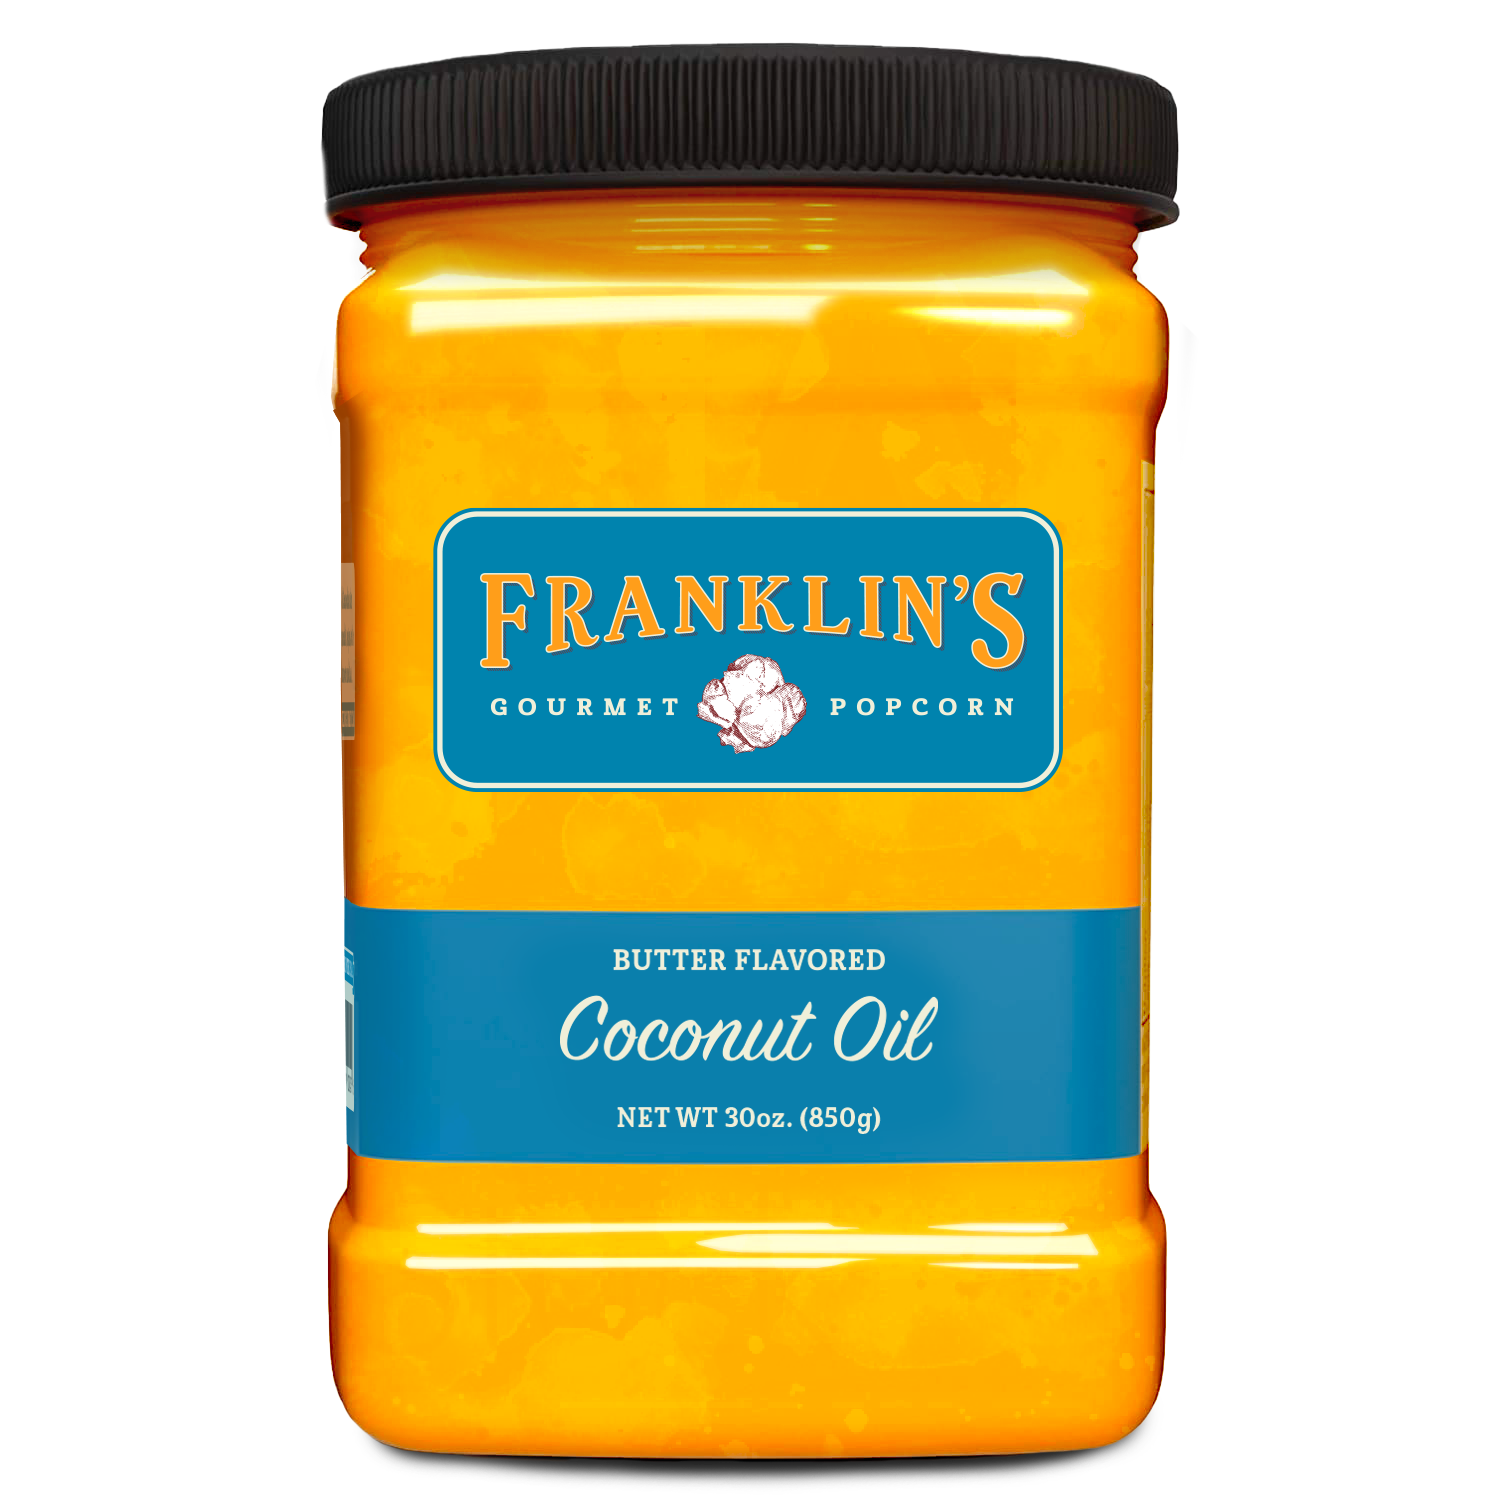 http://franklinspopcorn.com/cdn/shop/products/Franklins-Coconut-Oil-30oz-FRONT-Update-Textured_v1.png?v=1646705514